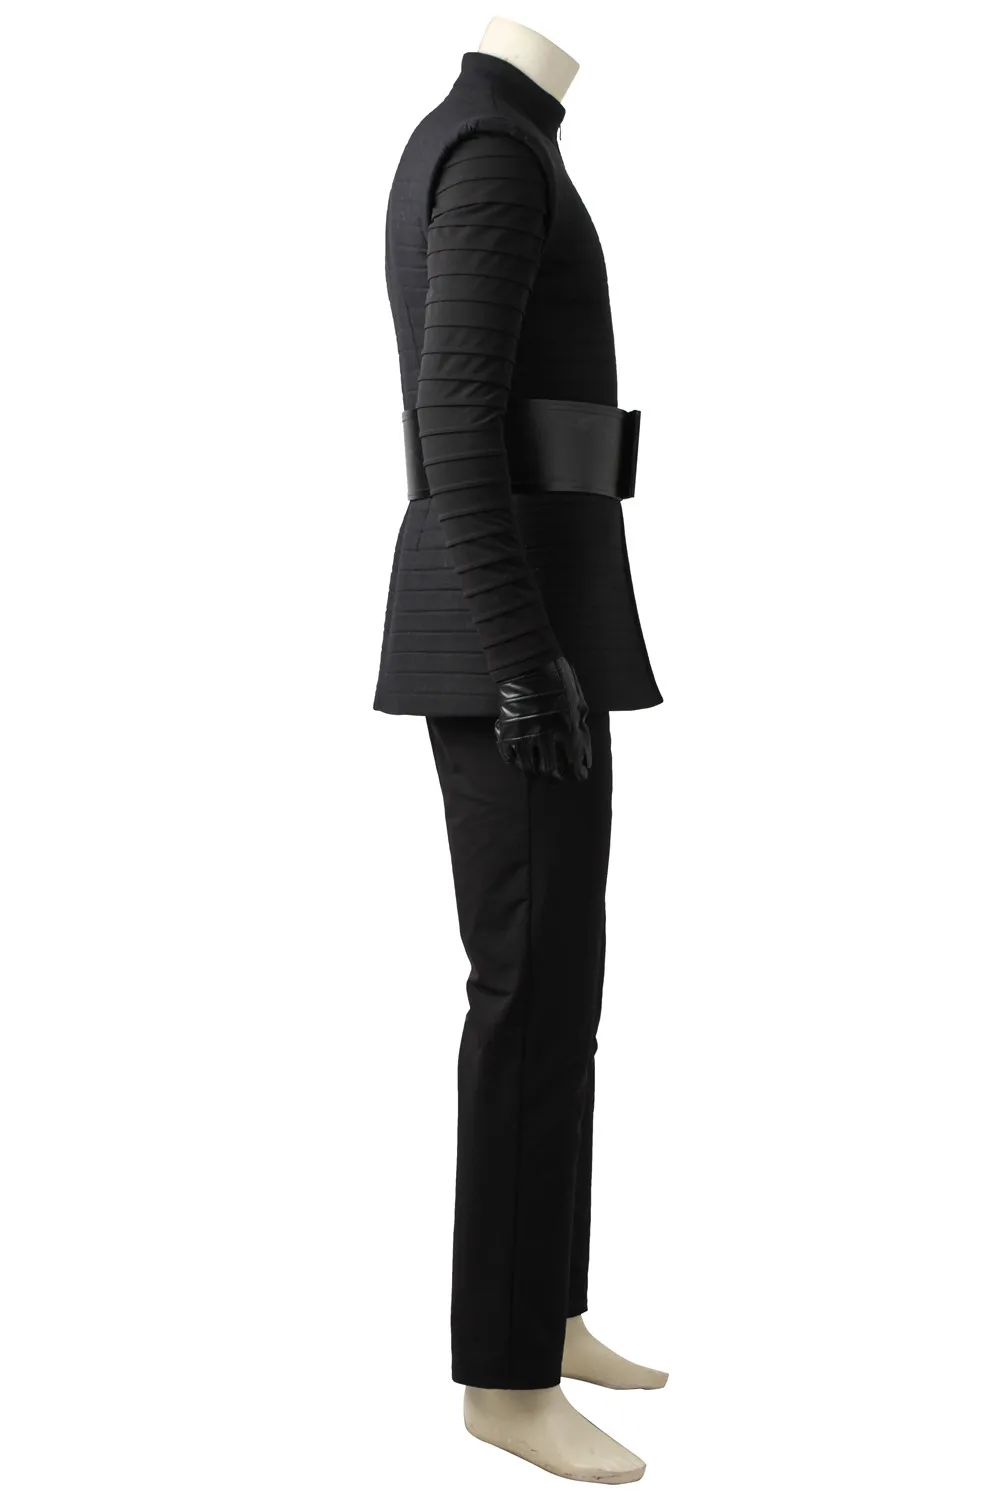 Kylo Ren костюм Звездные войны последний джедай Косплей Kylo Ren черный наряд мужской костюм на Хэллоуин COSPLAYONSEN индивидуальный заказ